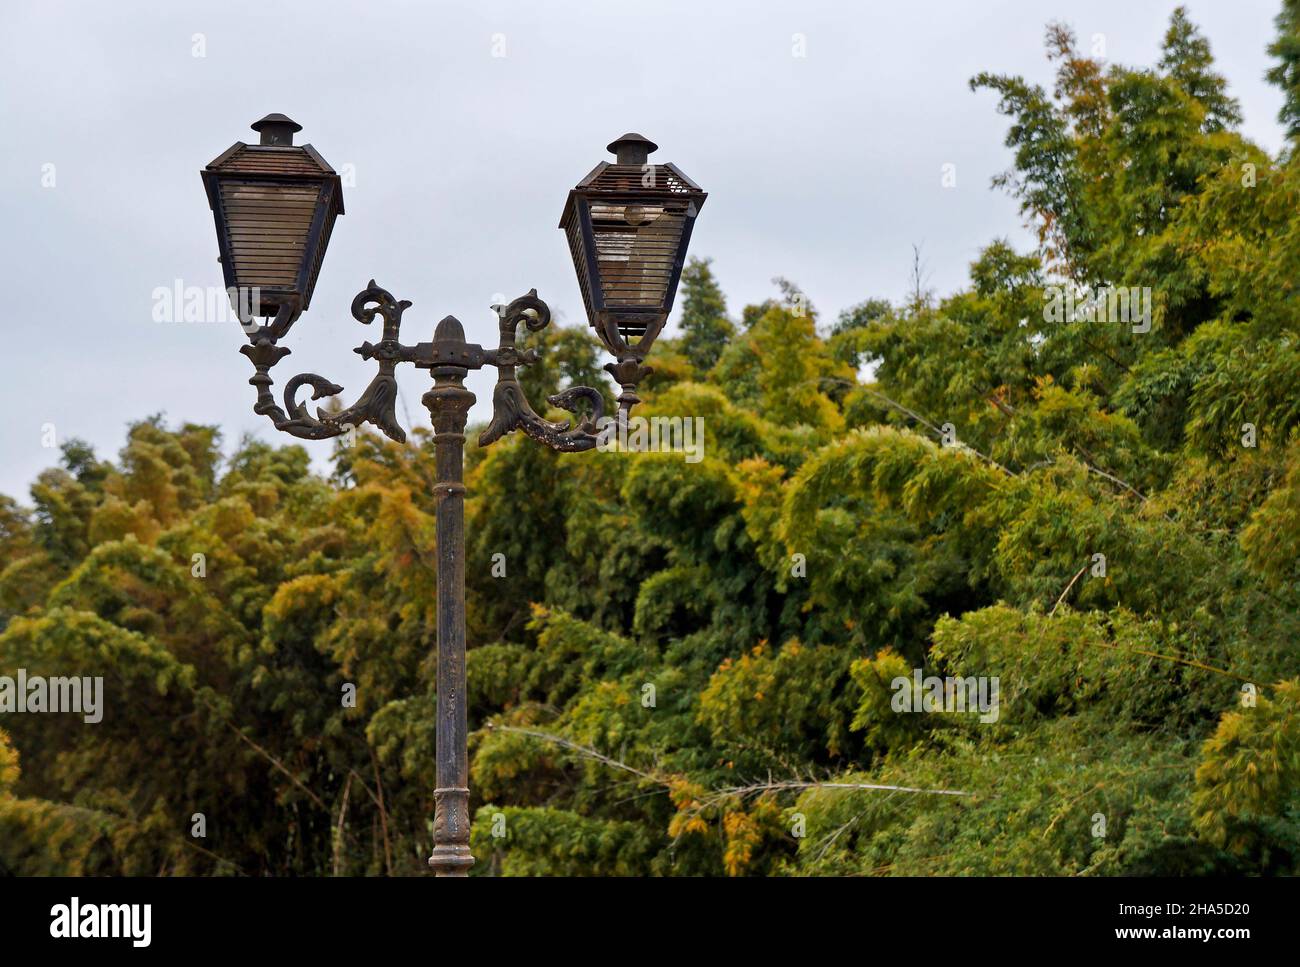 Ancien pôle lumineux et végétation, Tiradentes, Brésil Banque D'Images